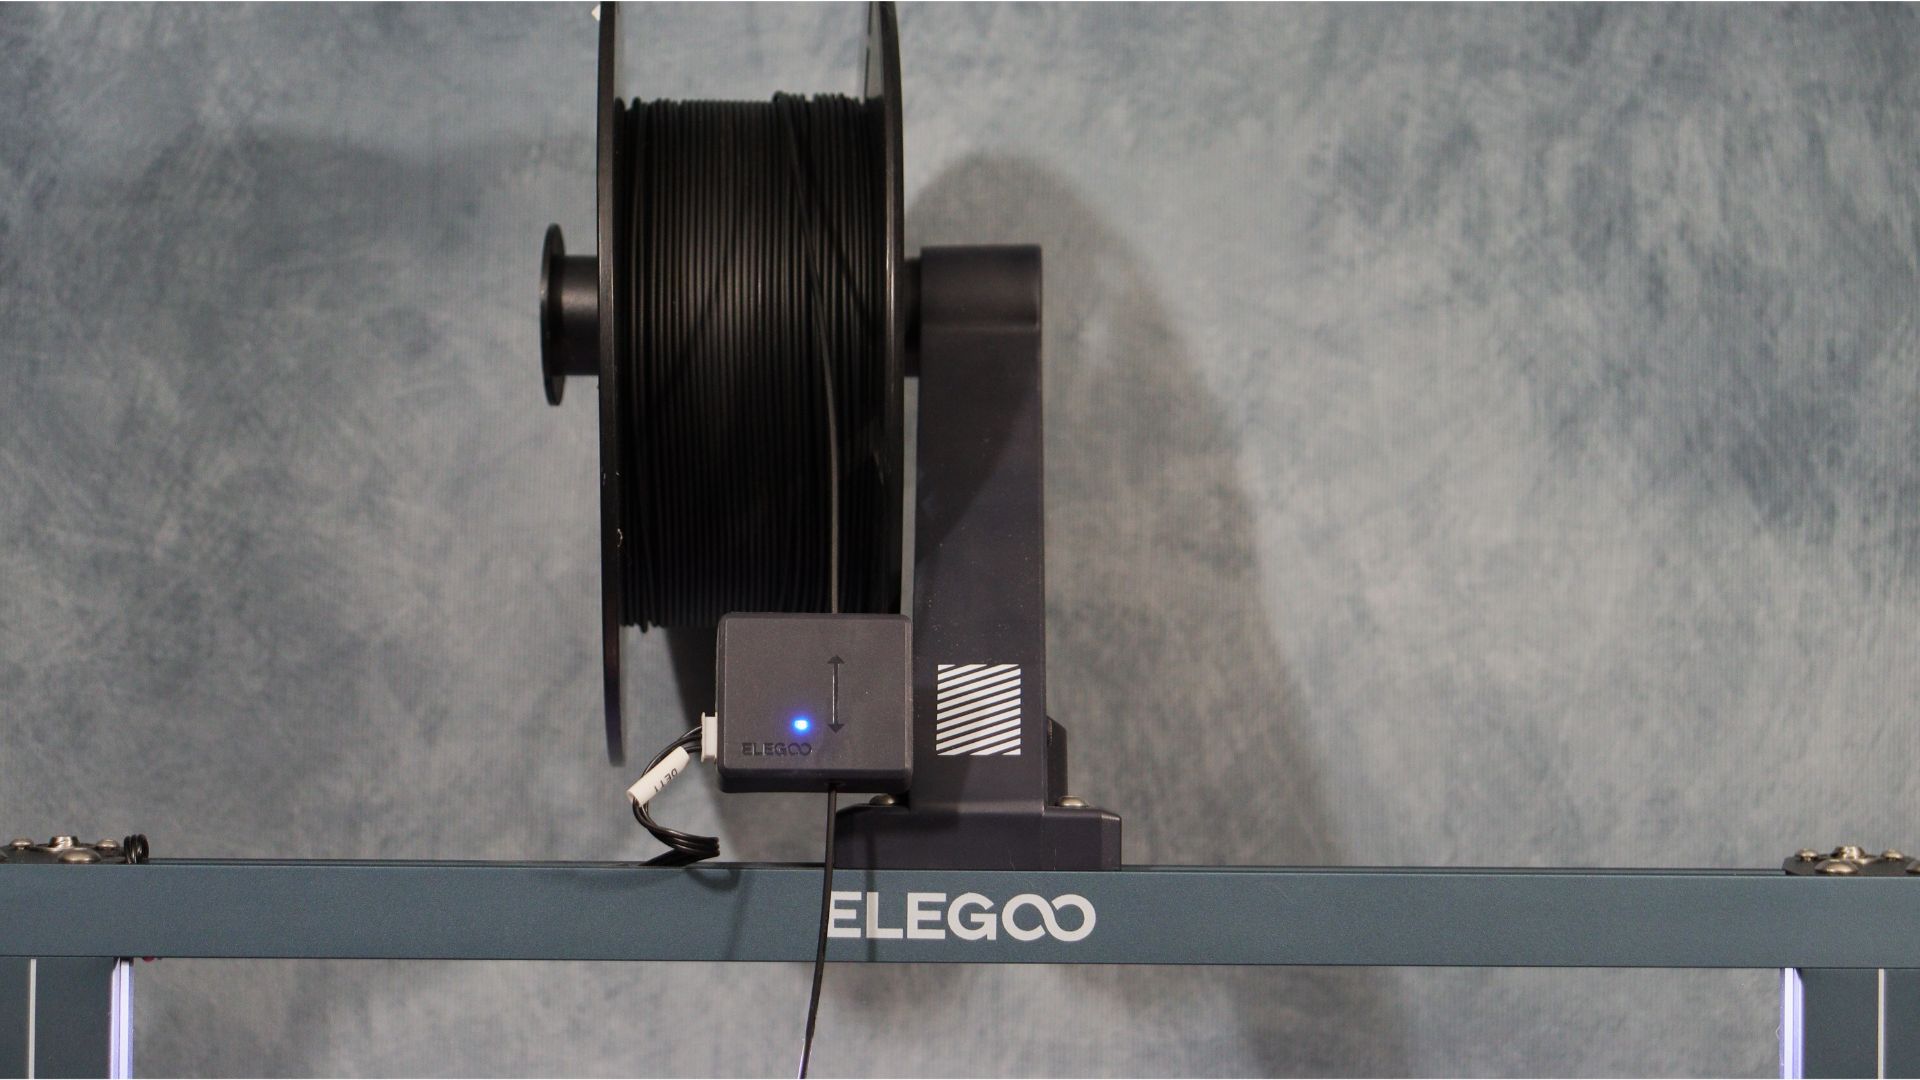 Elegoo Neptune 3 Plus spool holder